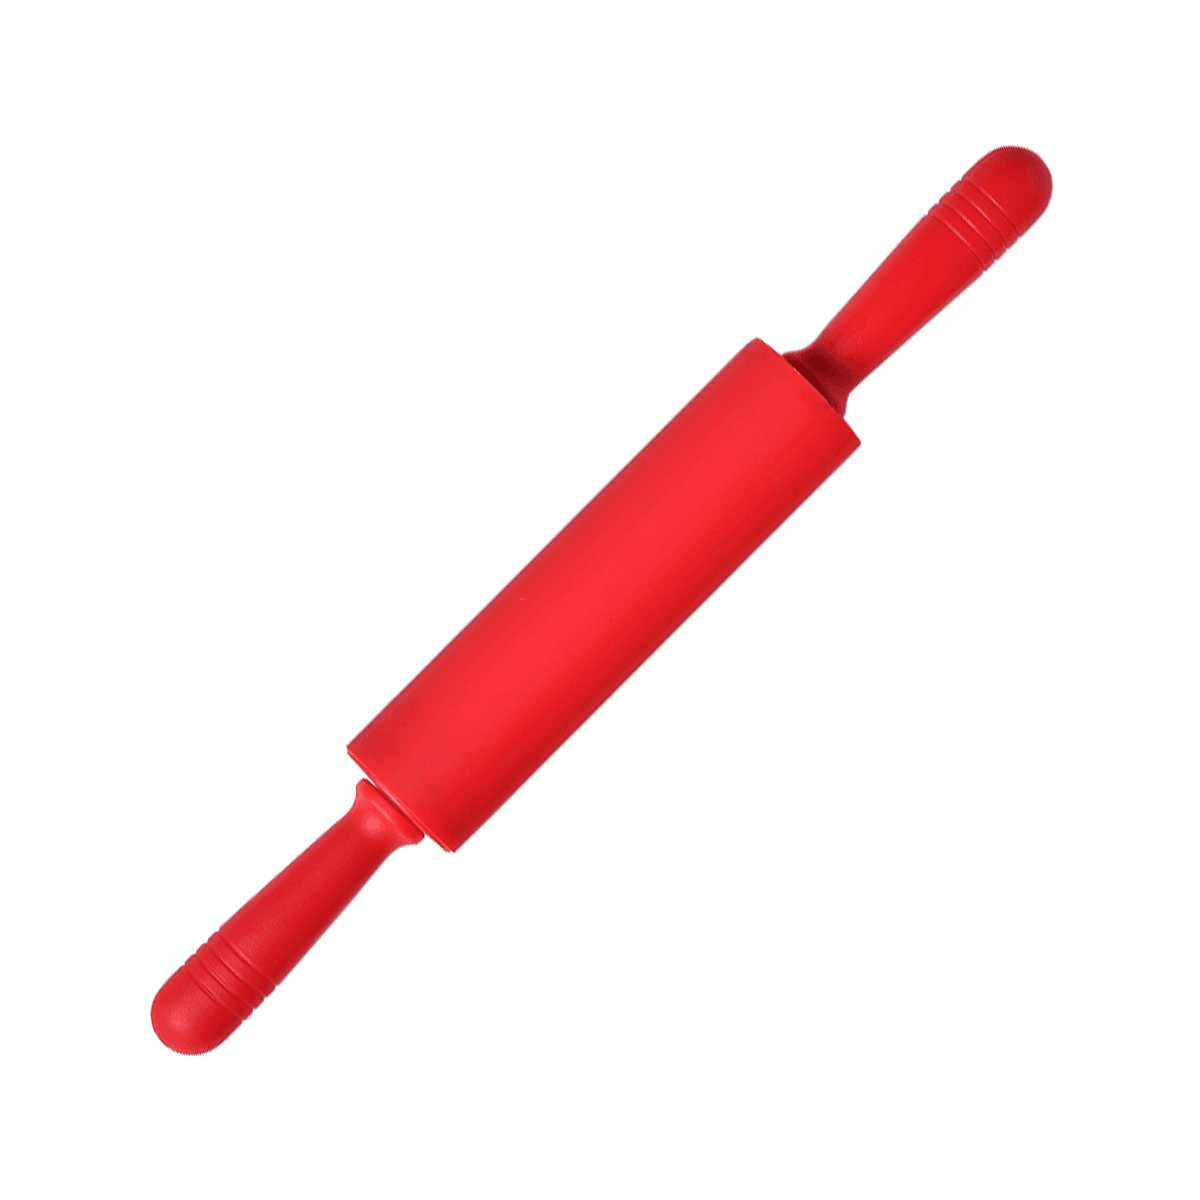 شوبك عجين سيليكون وبلاستيك 45.5 سم أحمر ڤاج  Vague Silicone Pastry Rolling Pin 45.5 cm Plastic Silicone